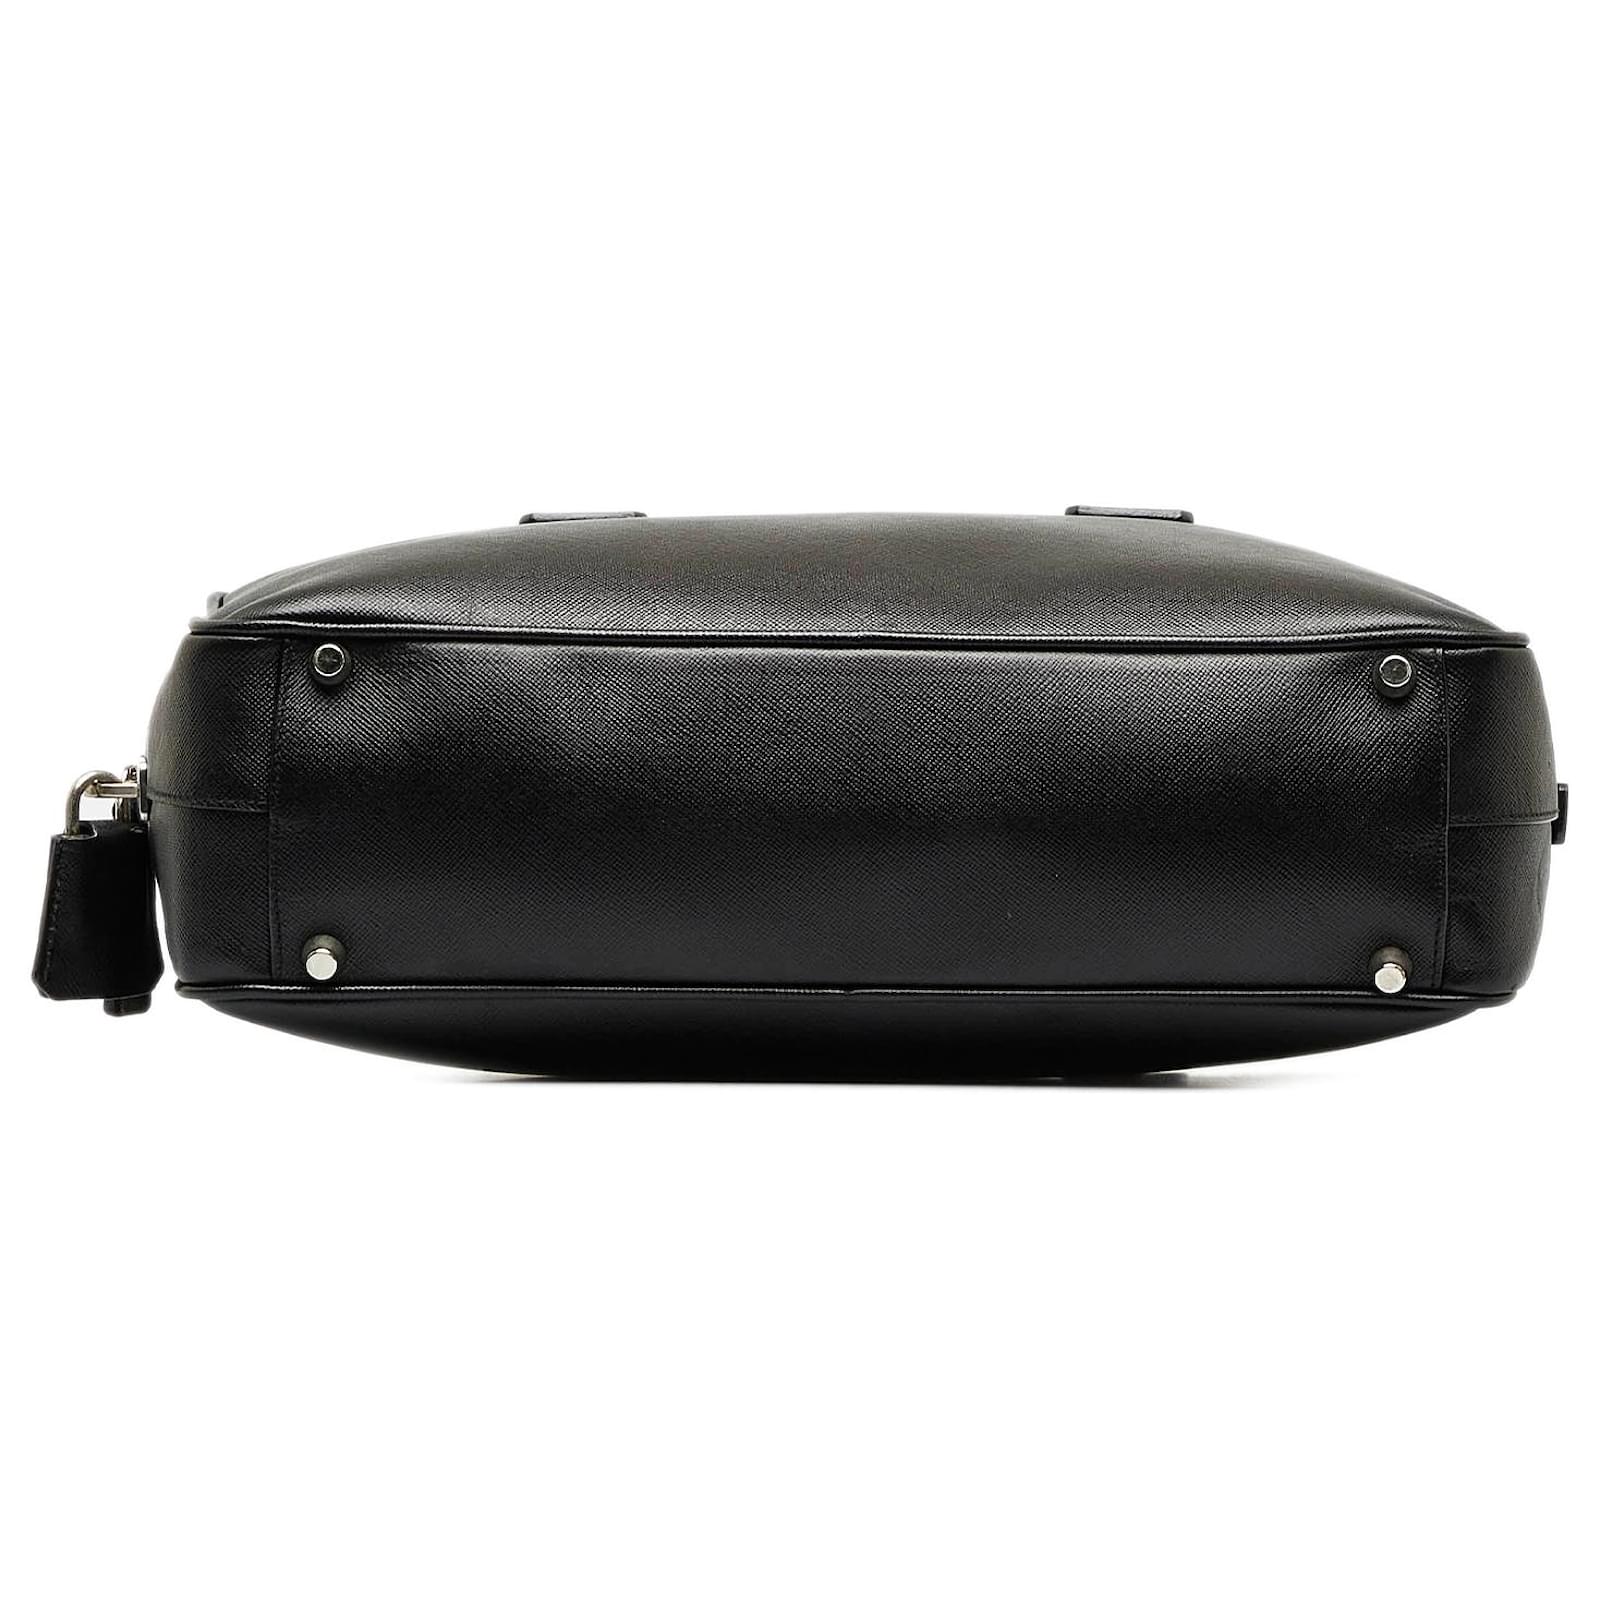 Prada Saffiano Bauletto Bag - Black Handle Bags, Handbags - PRA847583